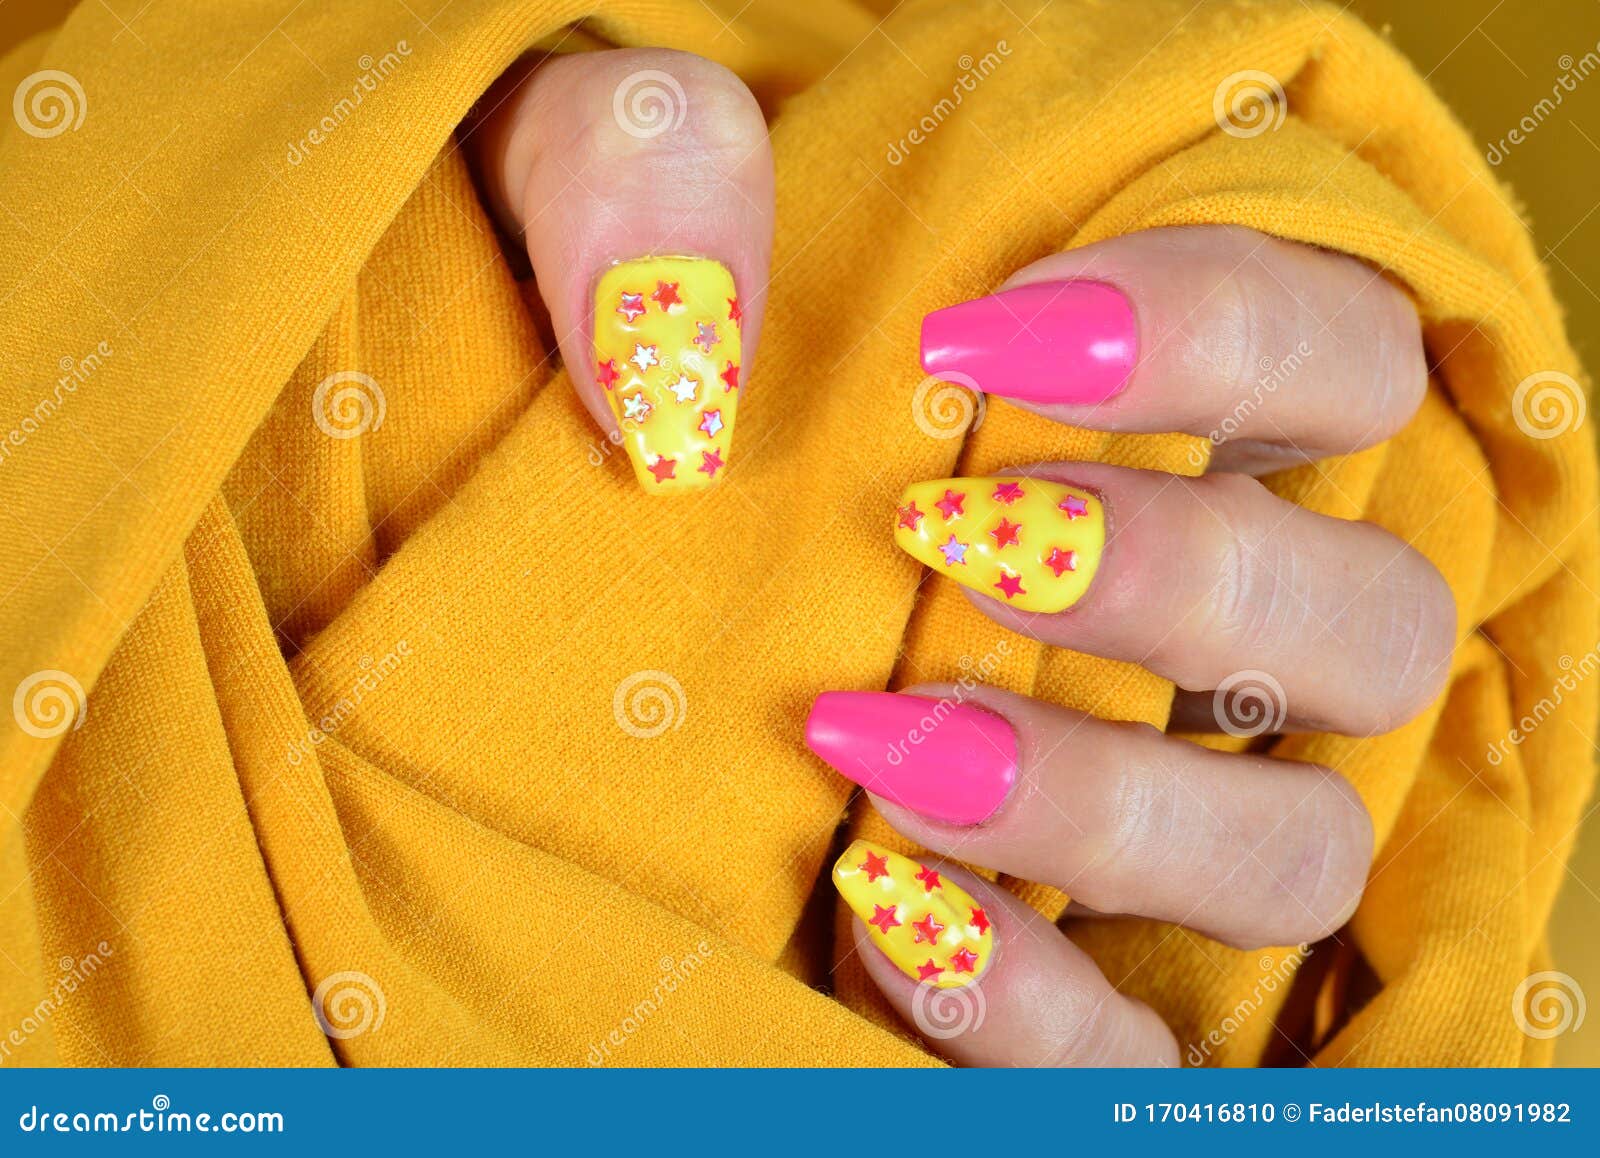 Las uñas amarillentas pueden ser señal de daño en el hígado y otros  problemas de salud  Estilo de Vida Bienestar  Univision